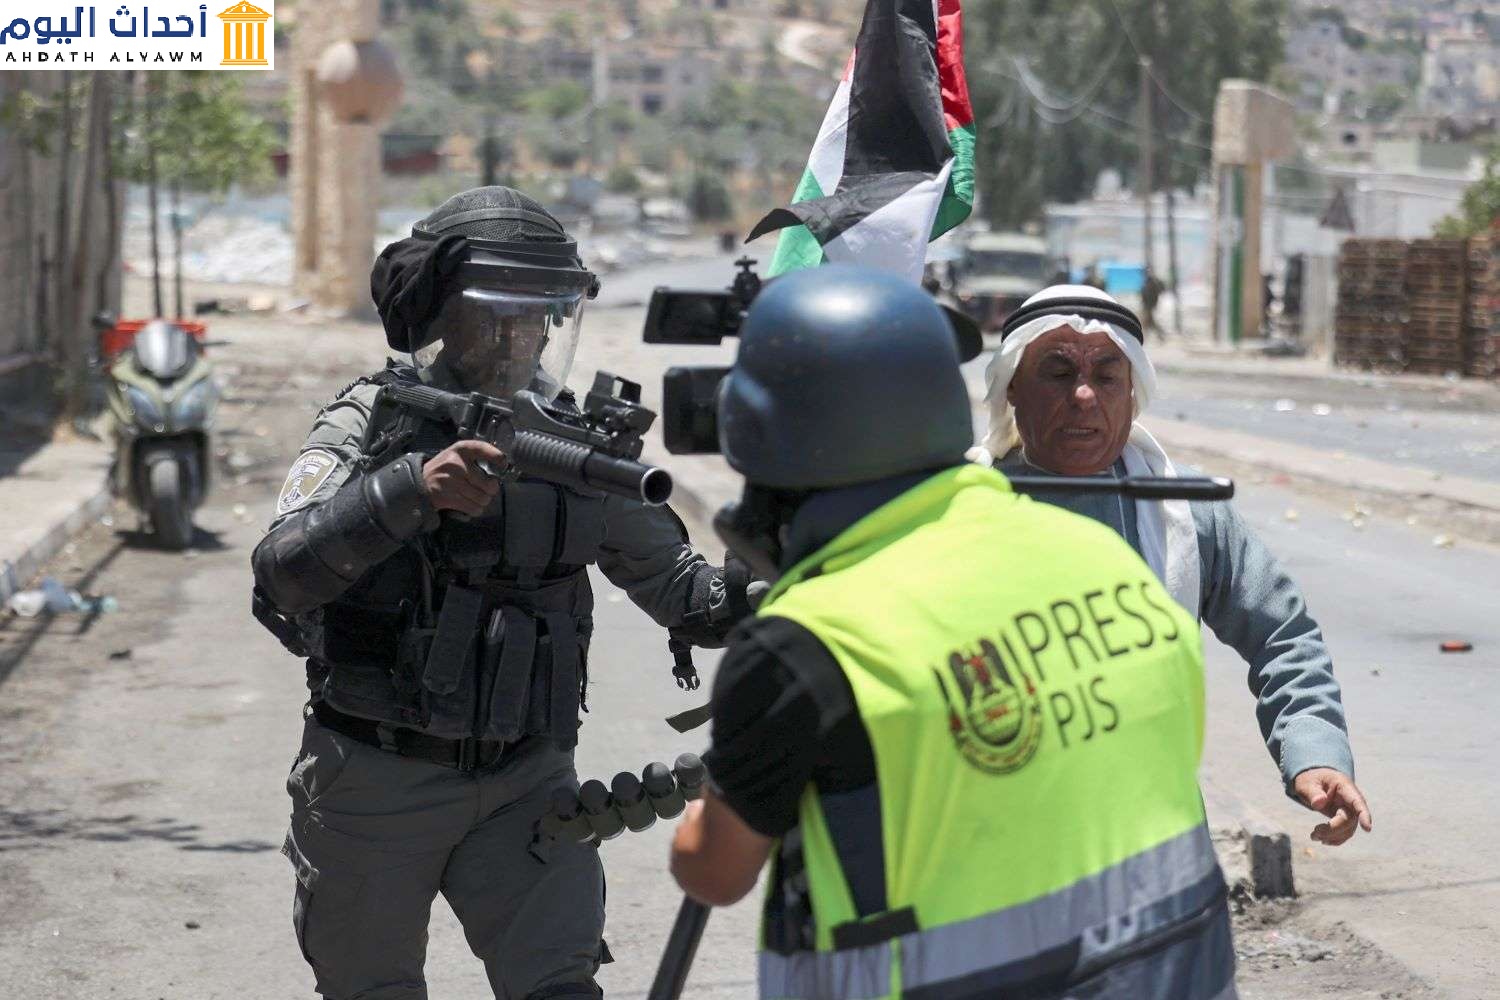 أحد عناصر قوات الأمن الإسرائيلية يحمل قاذفة غاز مسيل للدموع أمام صحفي، جنوب نابلس - الضفة الغربية المحتلة، 18 يونيو 2021 (عباس المومني/ وكالة الصحافة الفرنسية AFP)